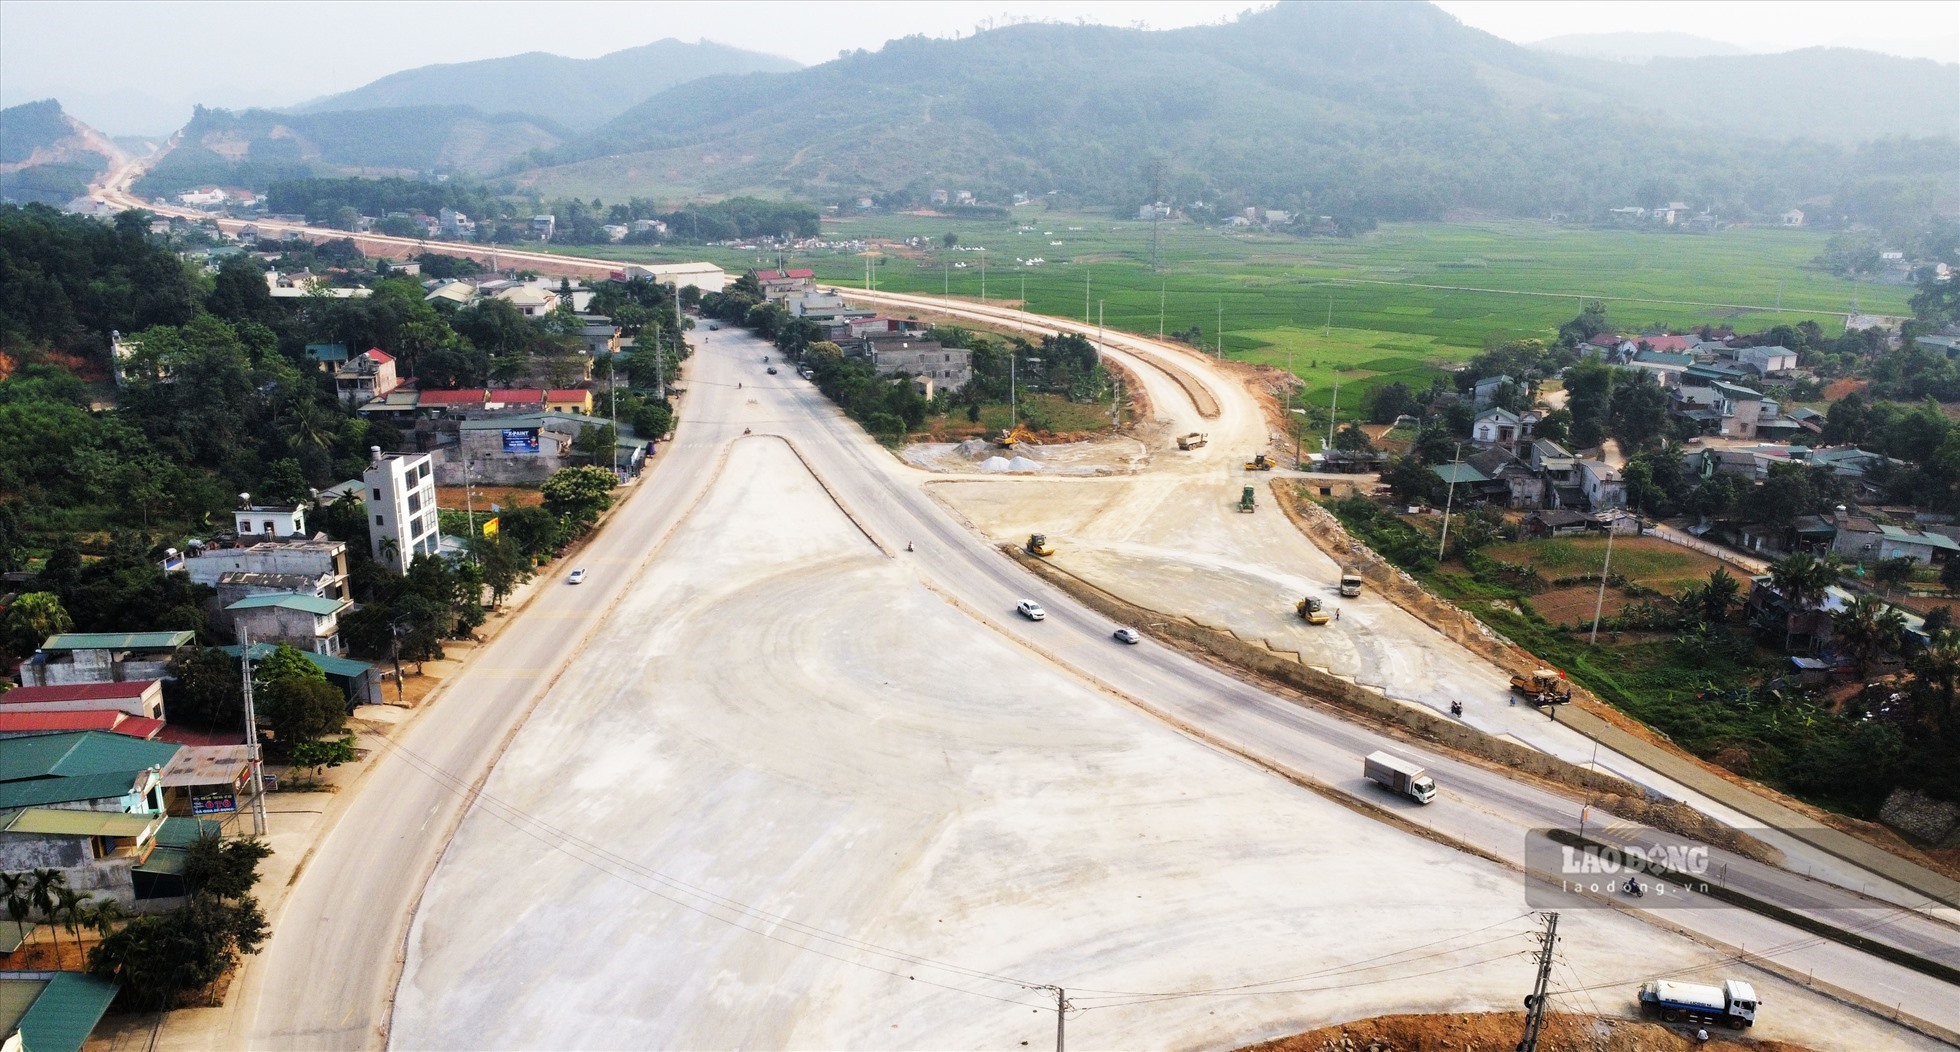 Điểm đầu của tuyến cao tốc Tuyên Quang - Phú Thọ, dự kiến từ vị trí này sẽ kết nối với tuyến cao tốc Tuyên Quang - Hà Giang. Ảnh: Nguyễn Tùng.